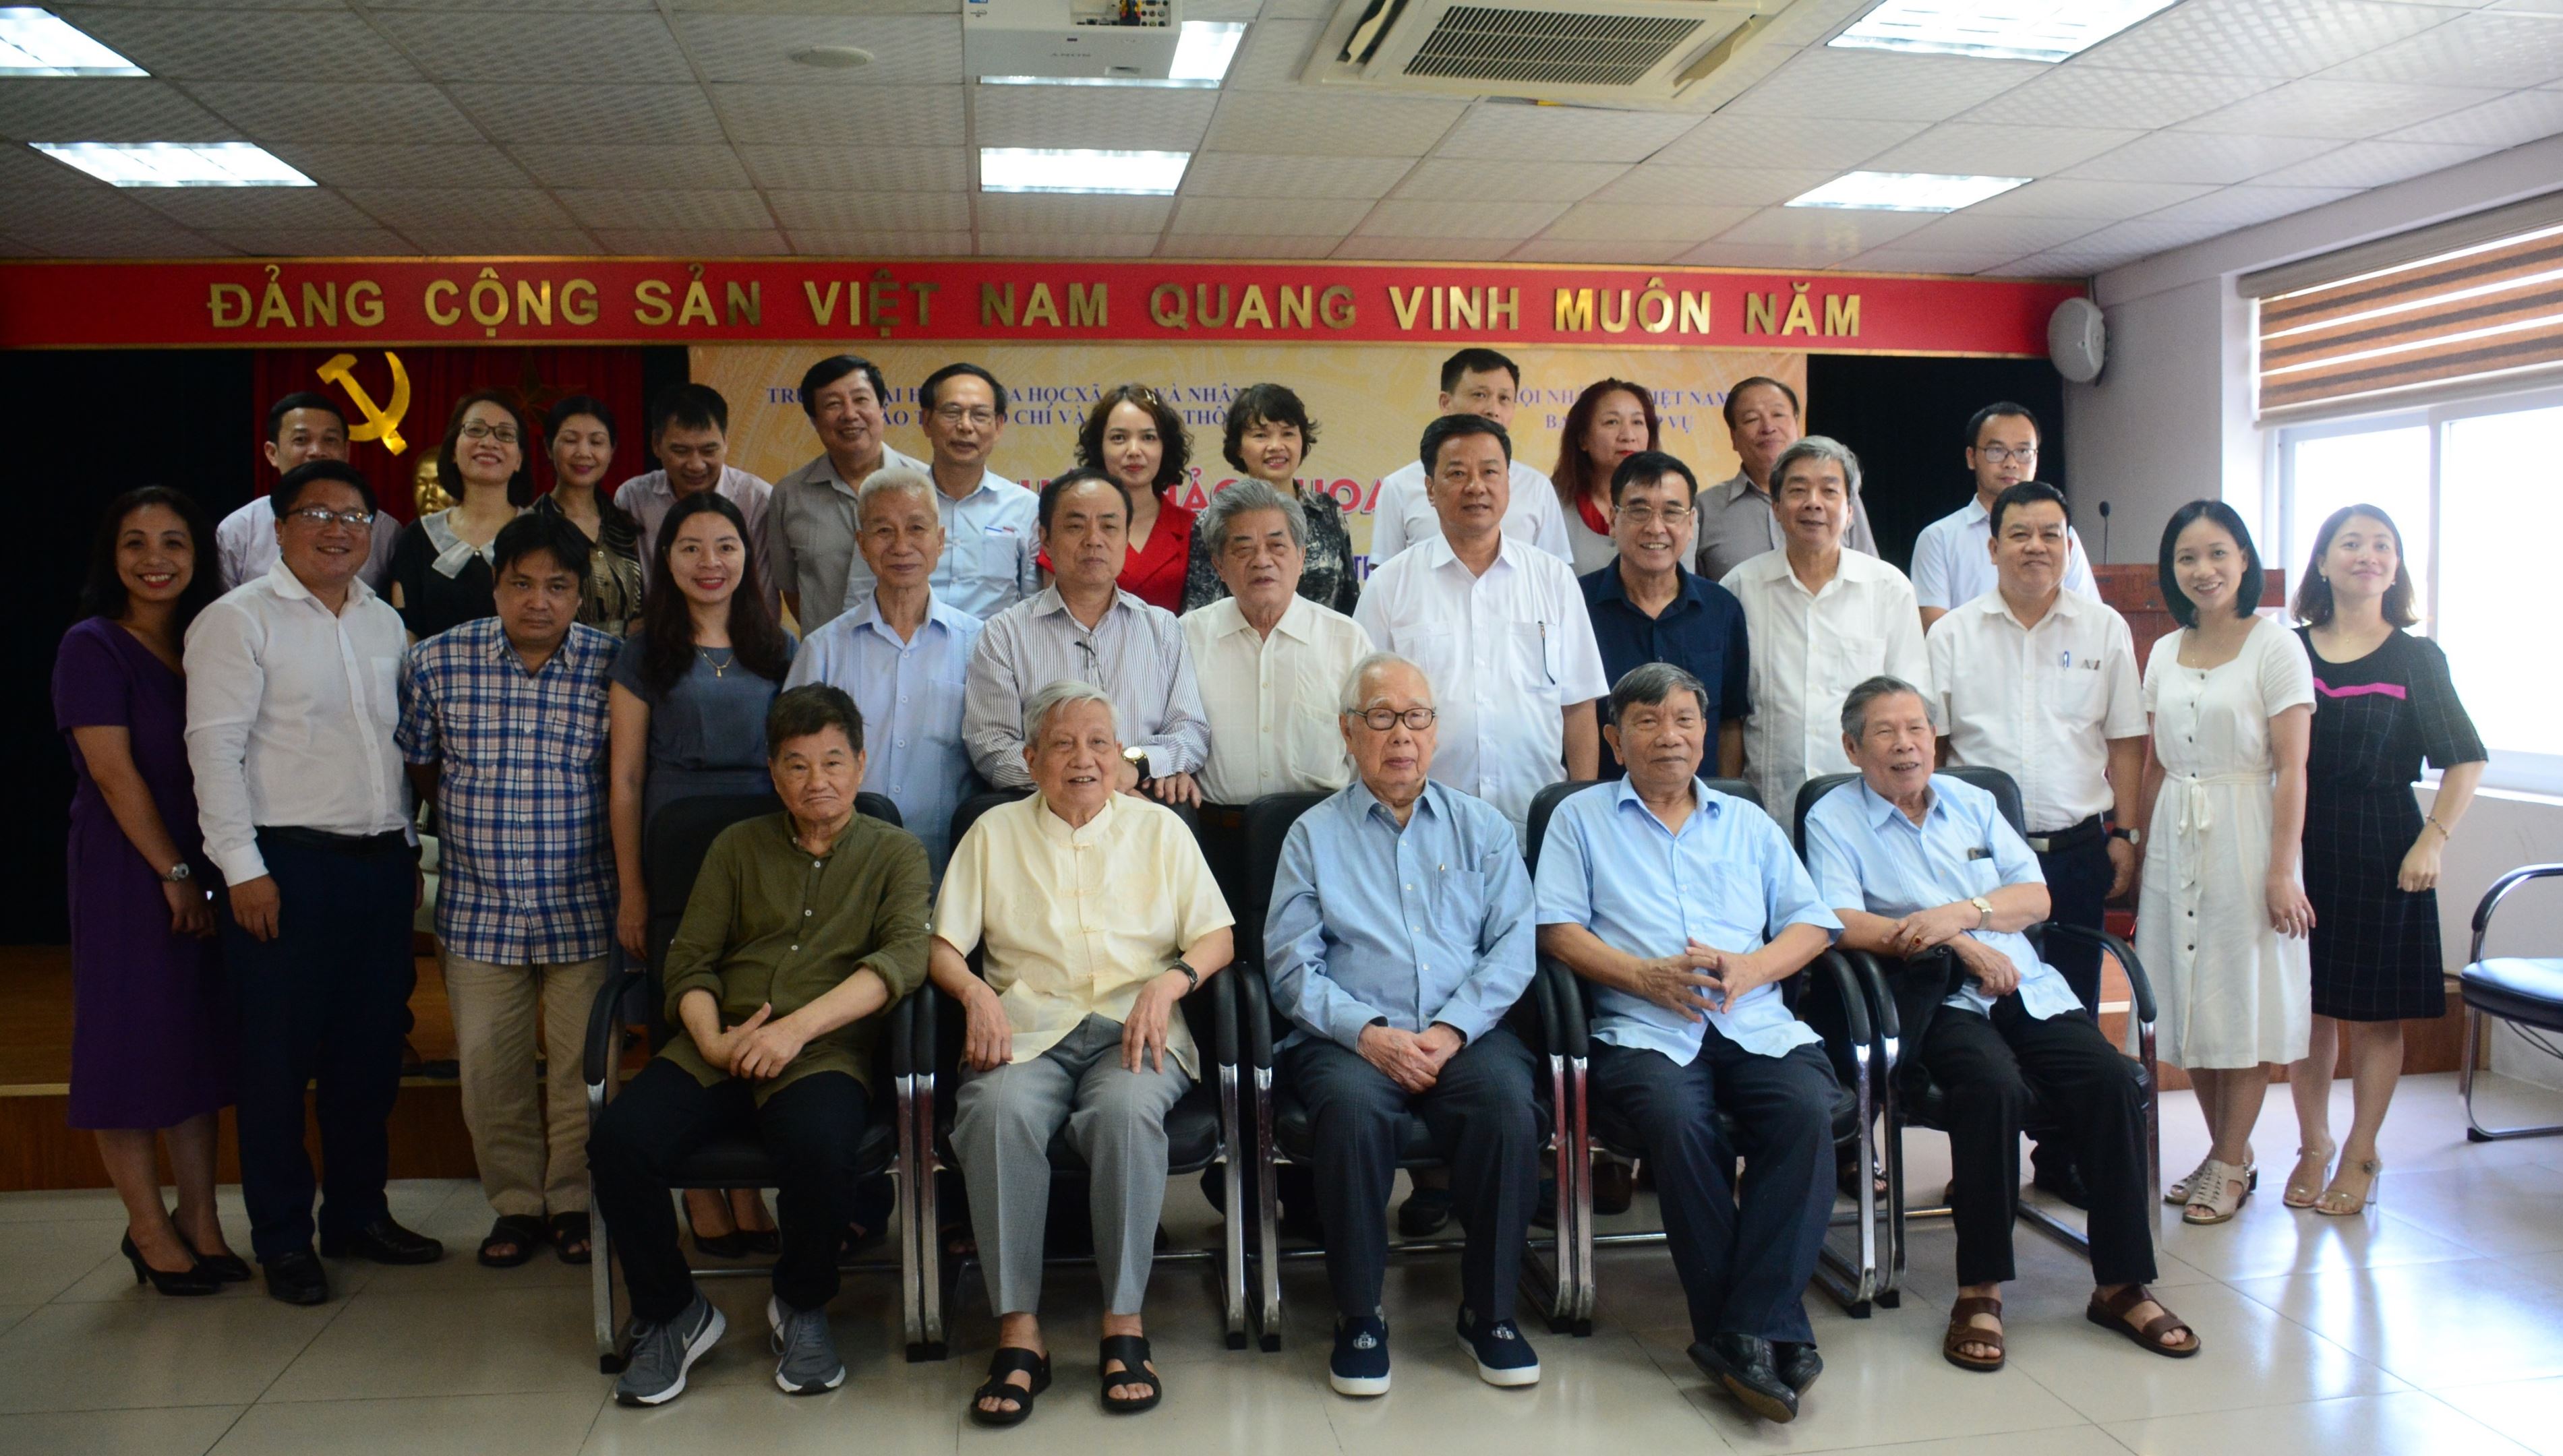 Hội thảo xây dựng danh mục nhân vật truyền thông phục vụ biên soạn Bộ Địa chí Quốc gia Việt Nam